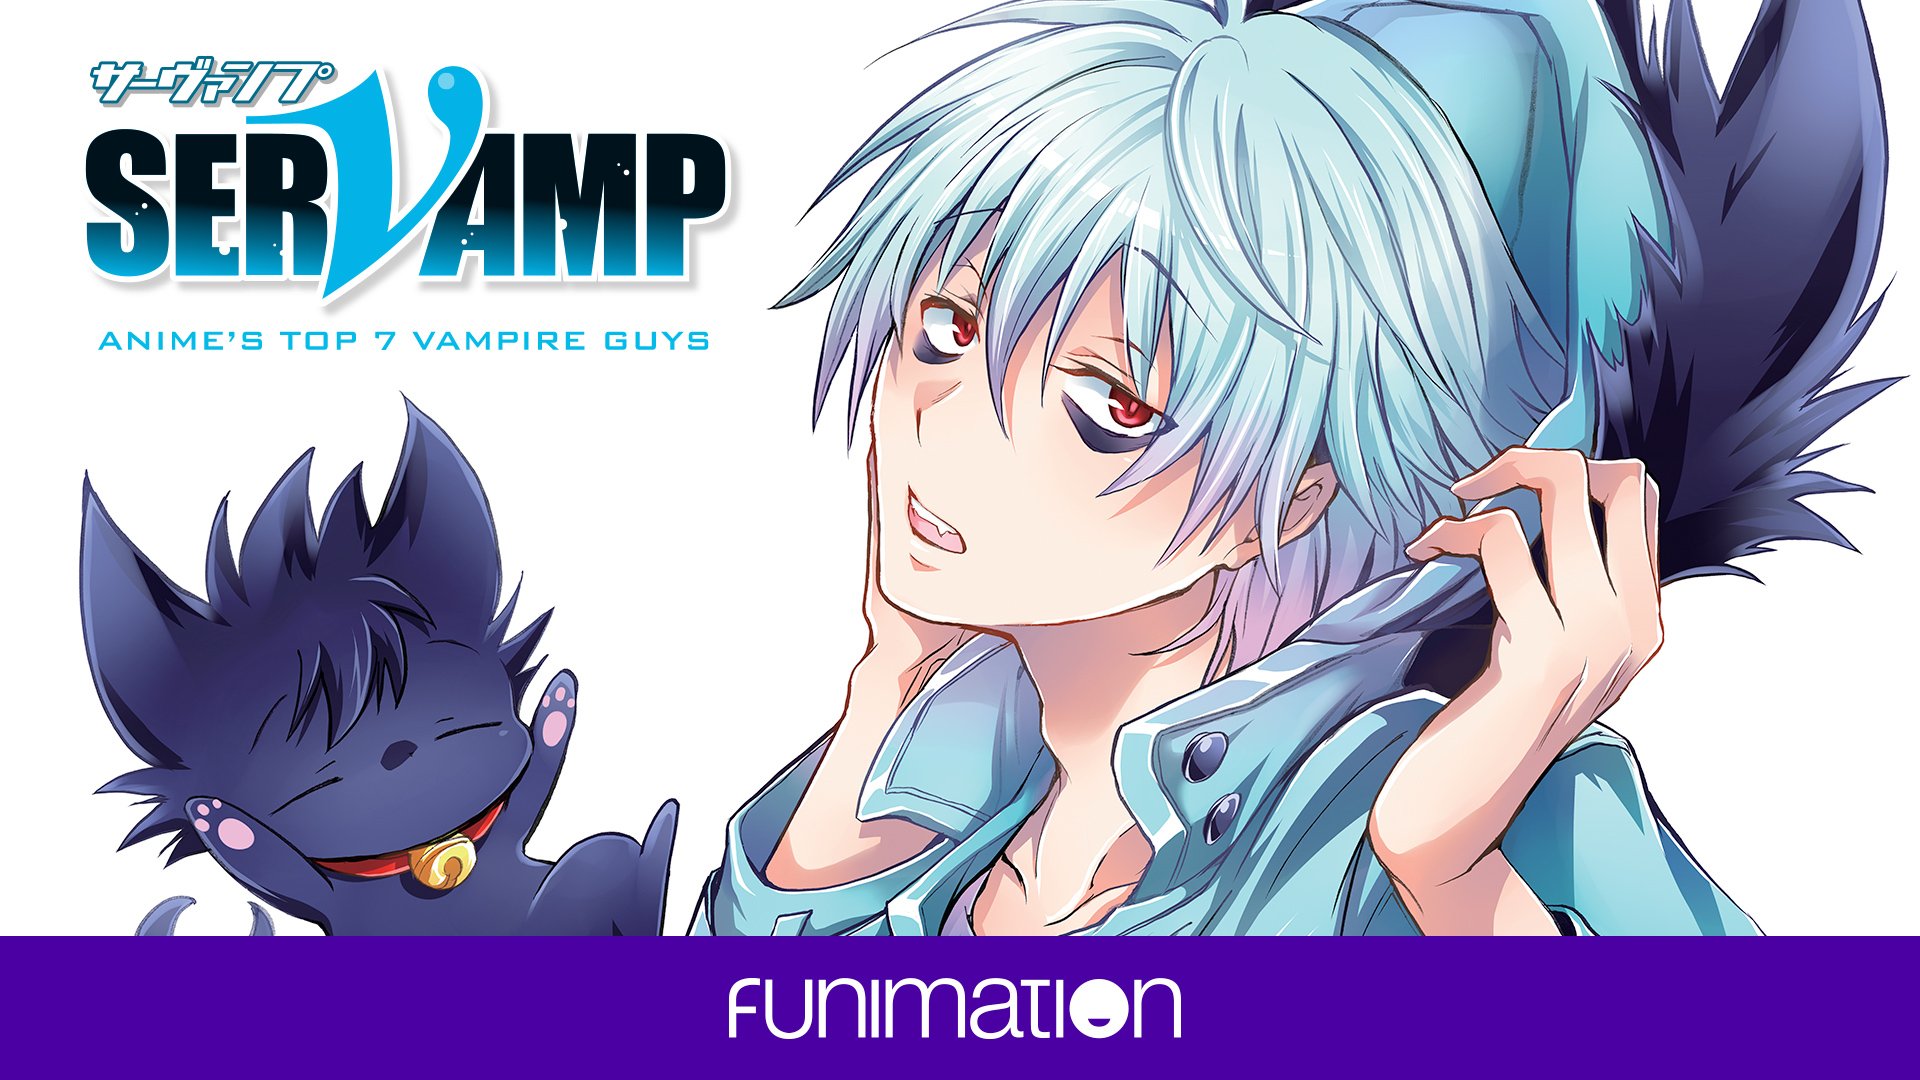 15 Hottest Anime Vampire Guys and Boys  ANIME Impulse 